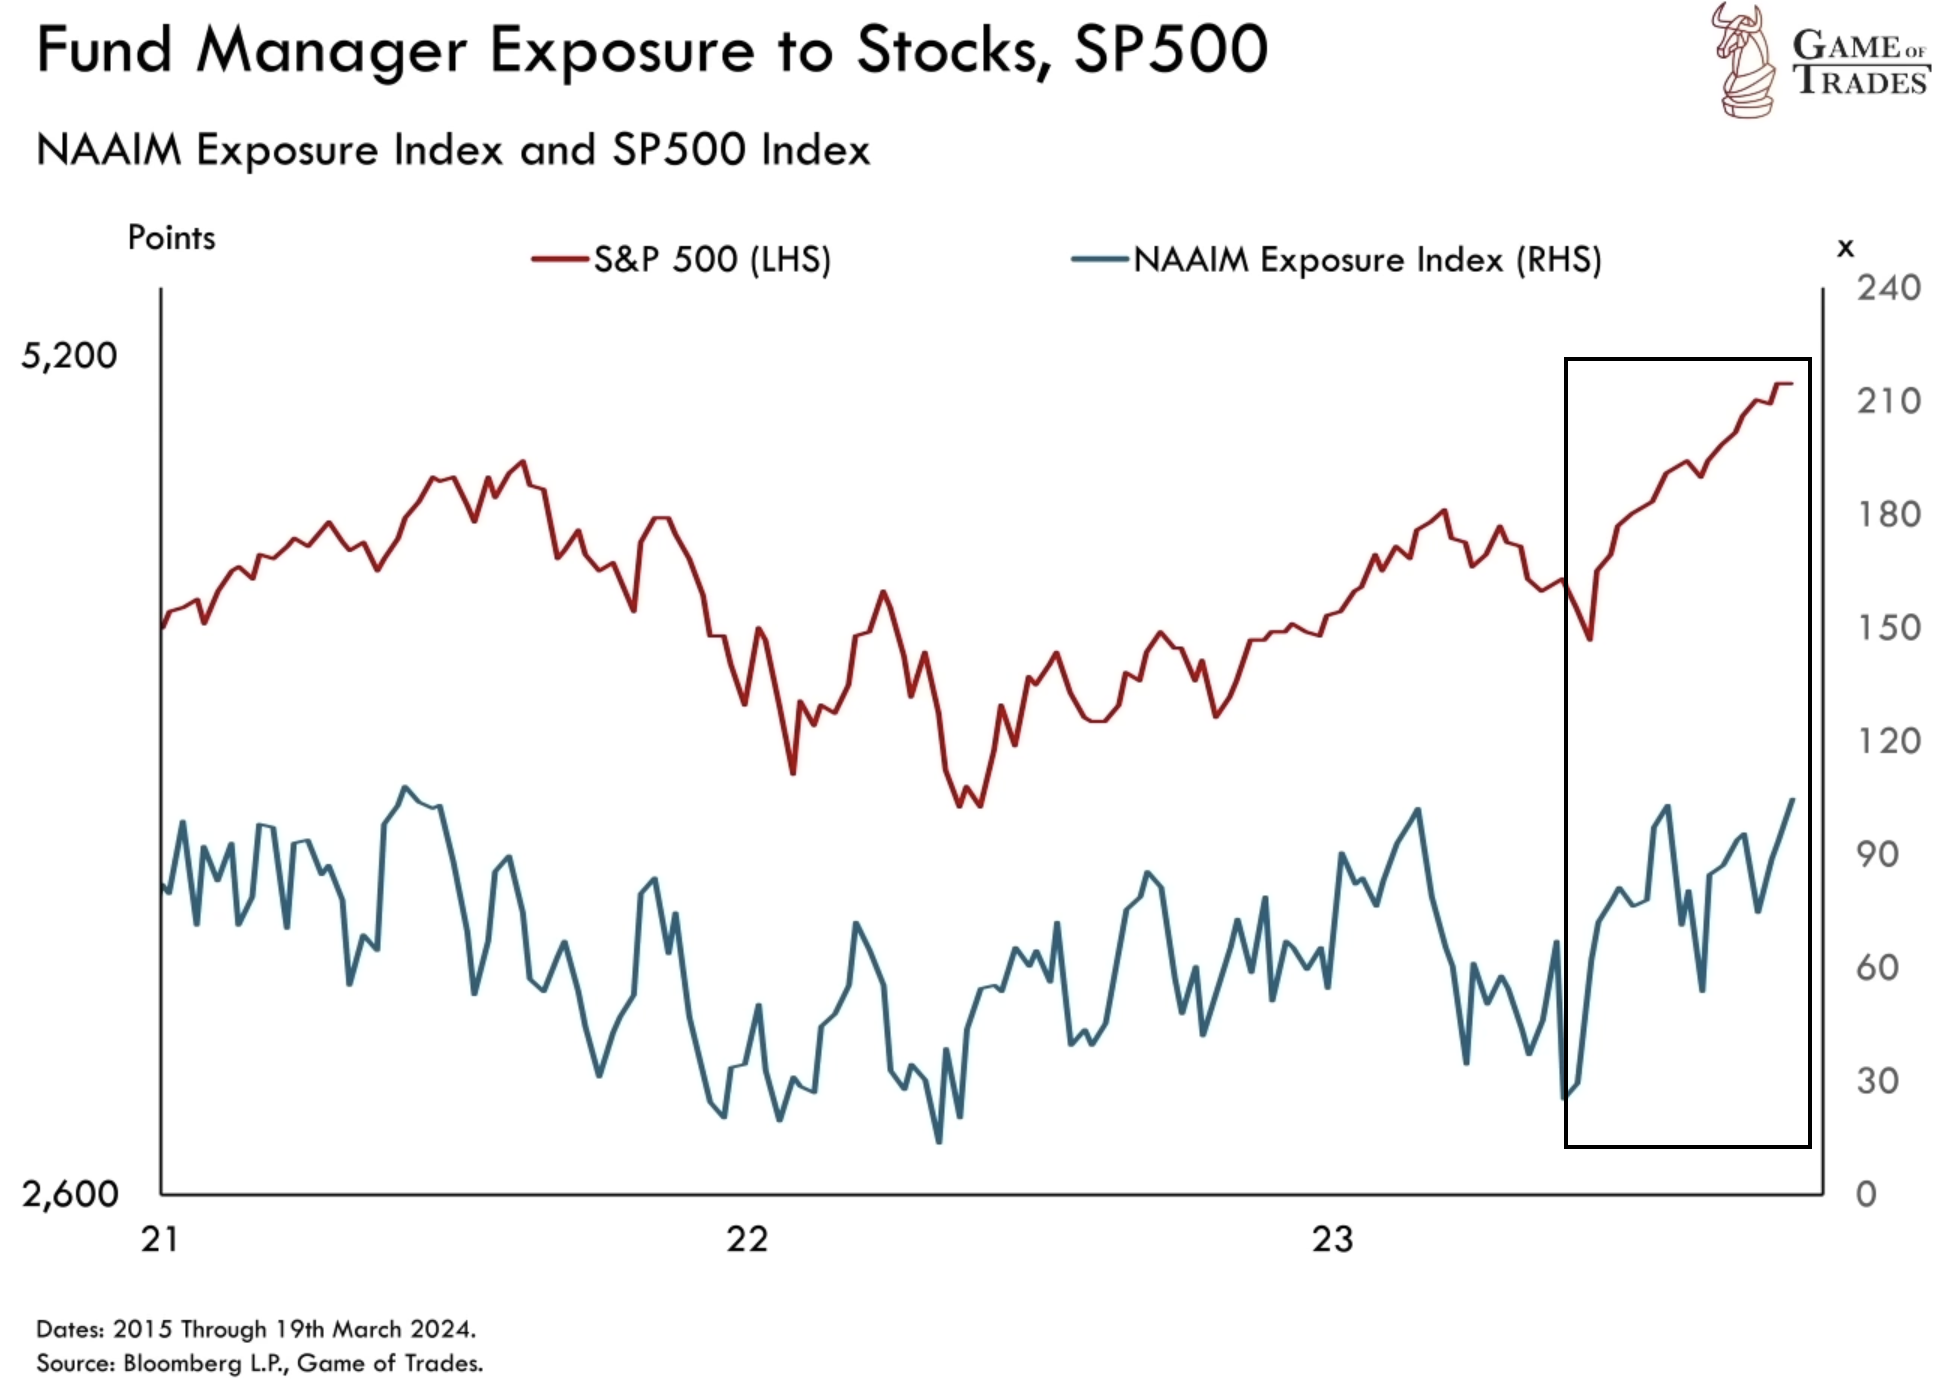 NAAIM exposure index and SP500 Index